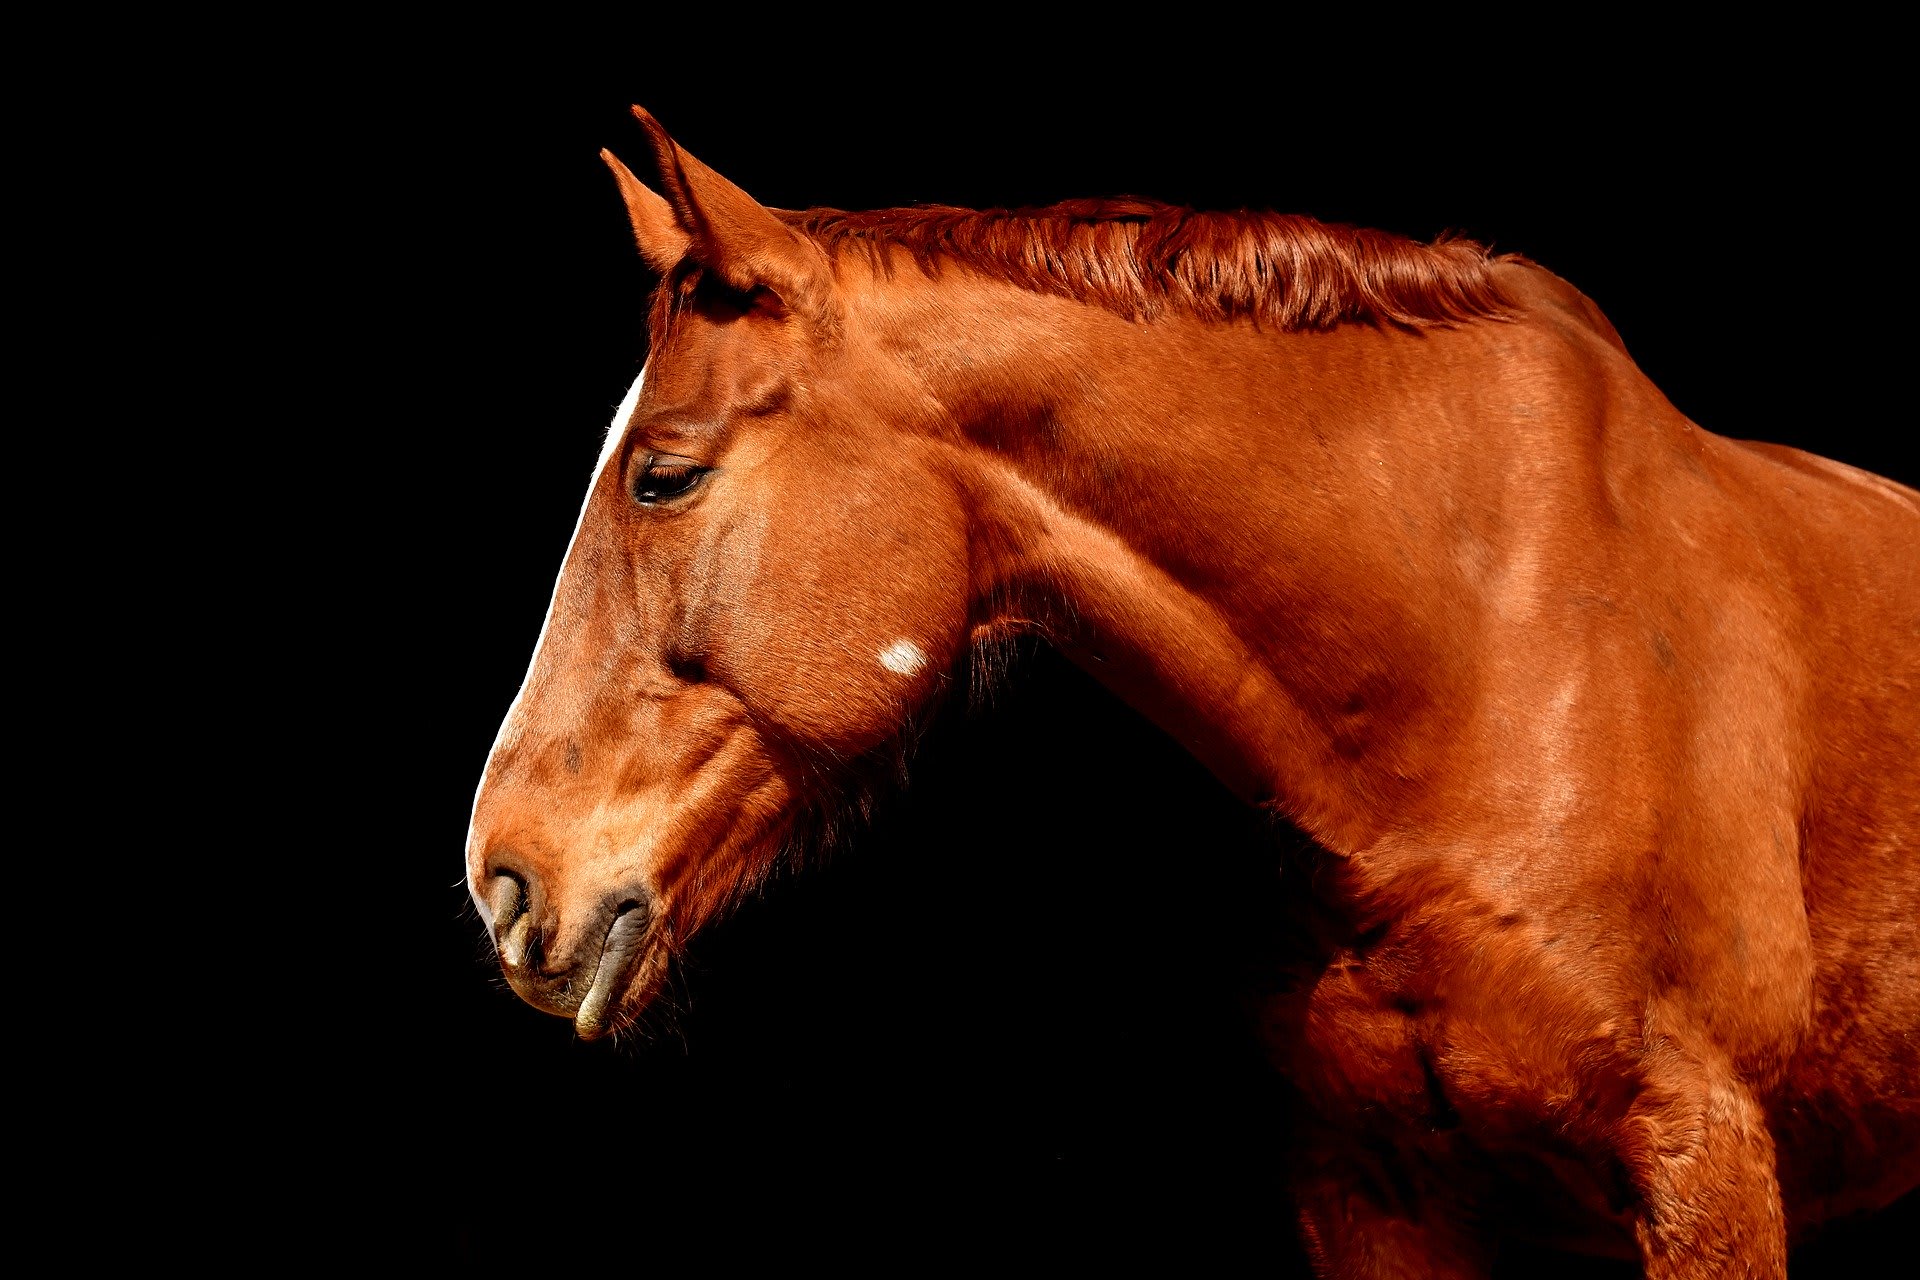 Dierenbeul verwondt geslachtsdeel paard in Amersfoort: 'Is nog maar de vraag of dit gaat genezen'